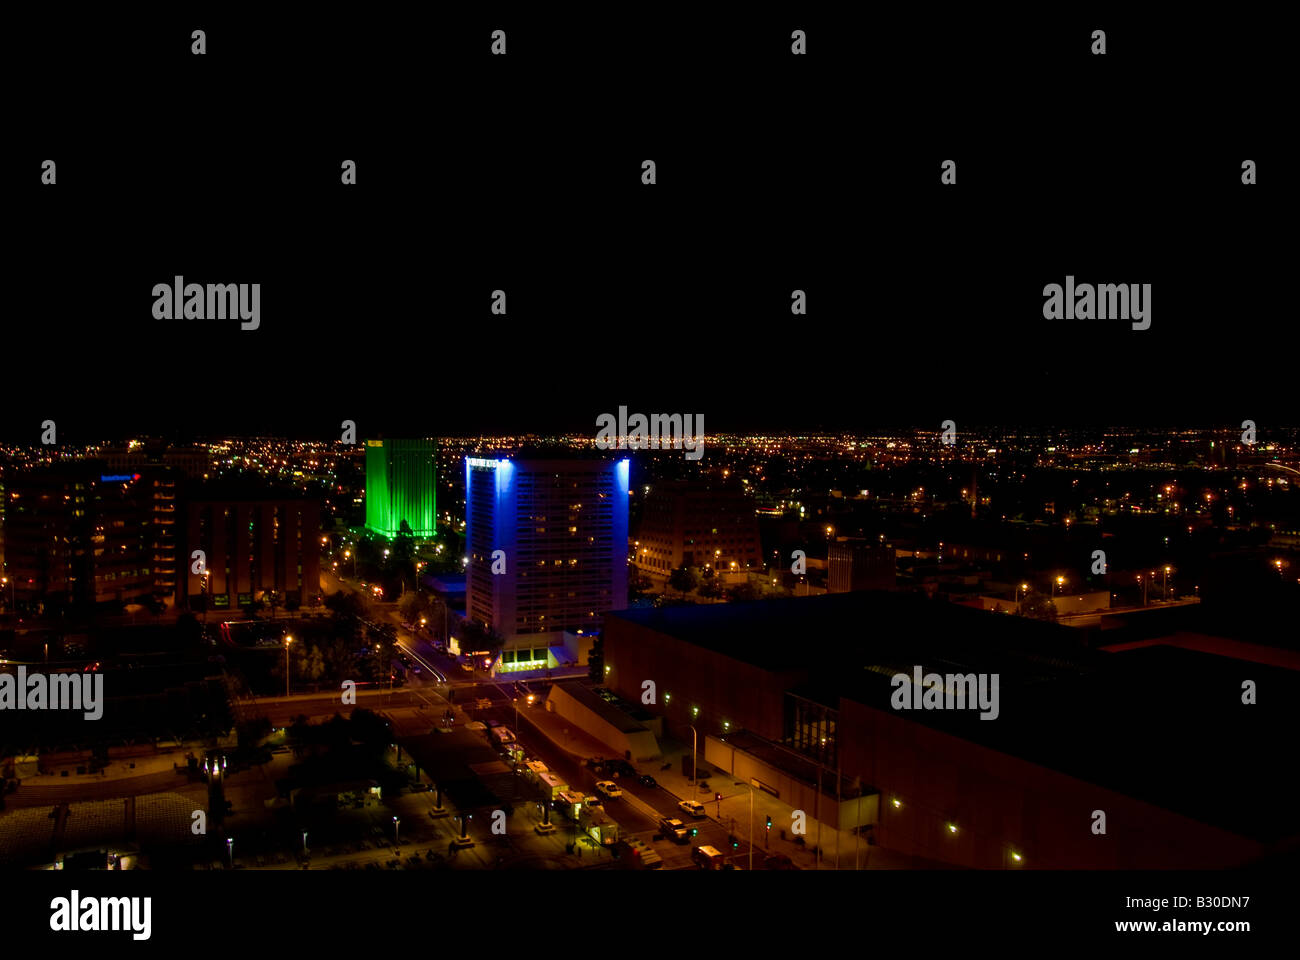 El banco Wells Fargo y Doubletree Hotel iluminado por la noche en el centro de Albuquerque Foto de stock